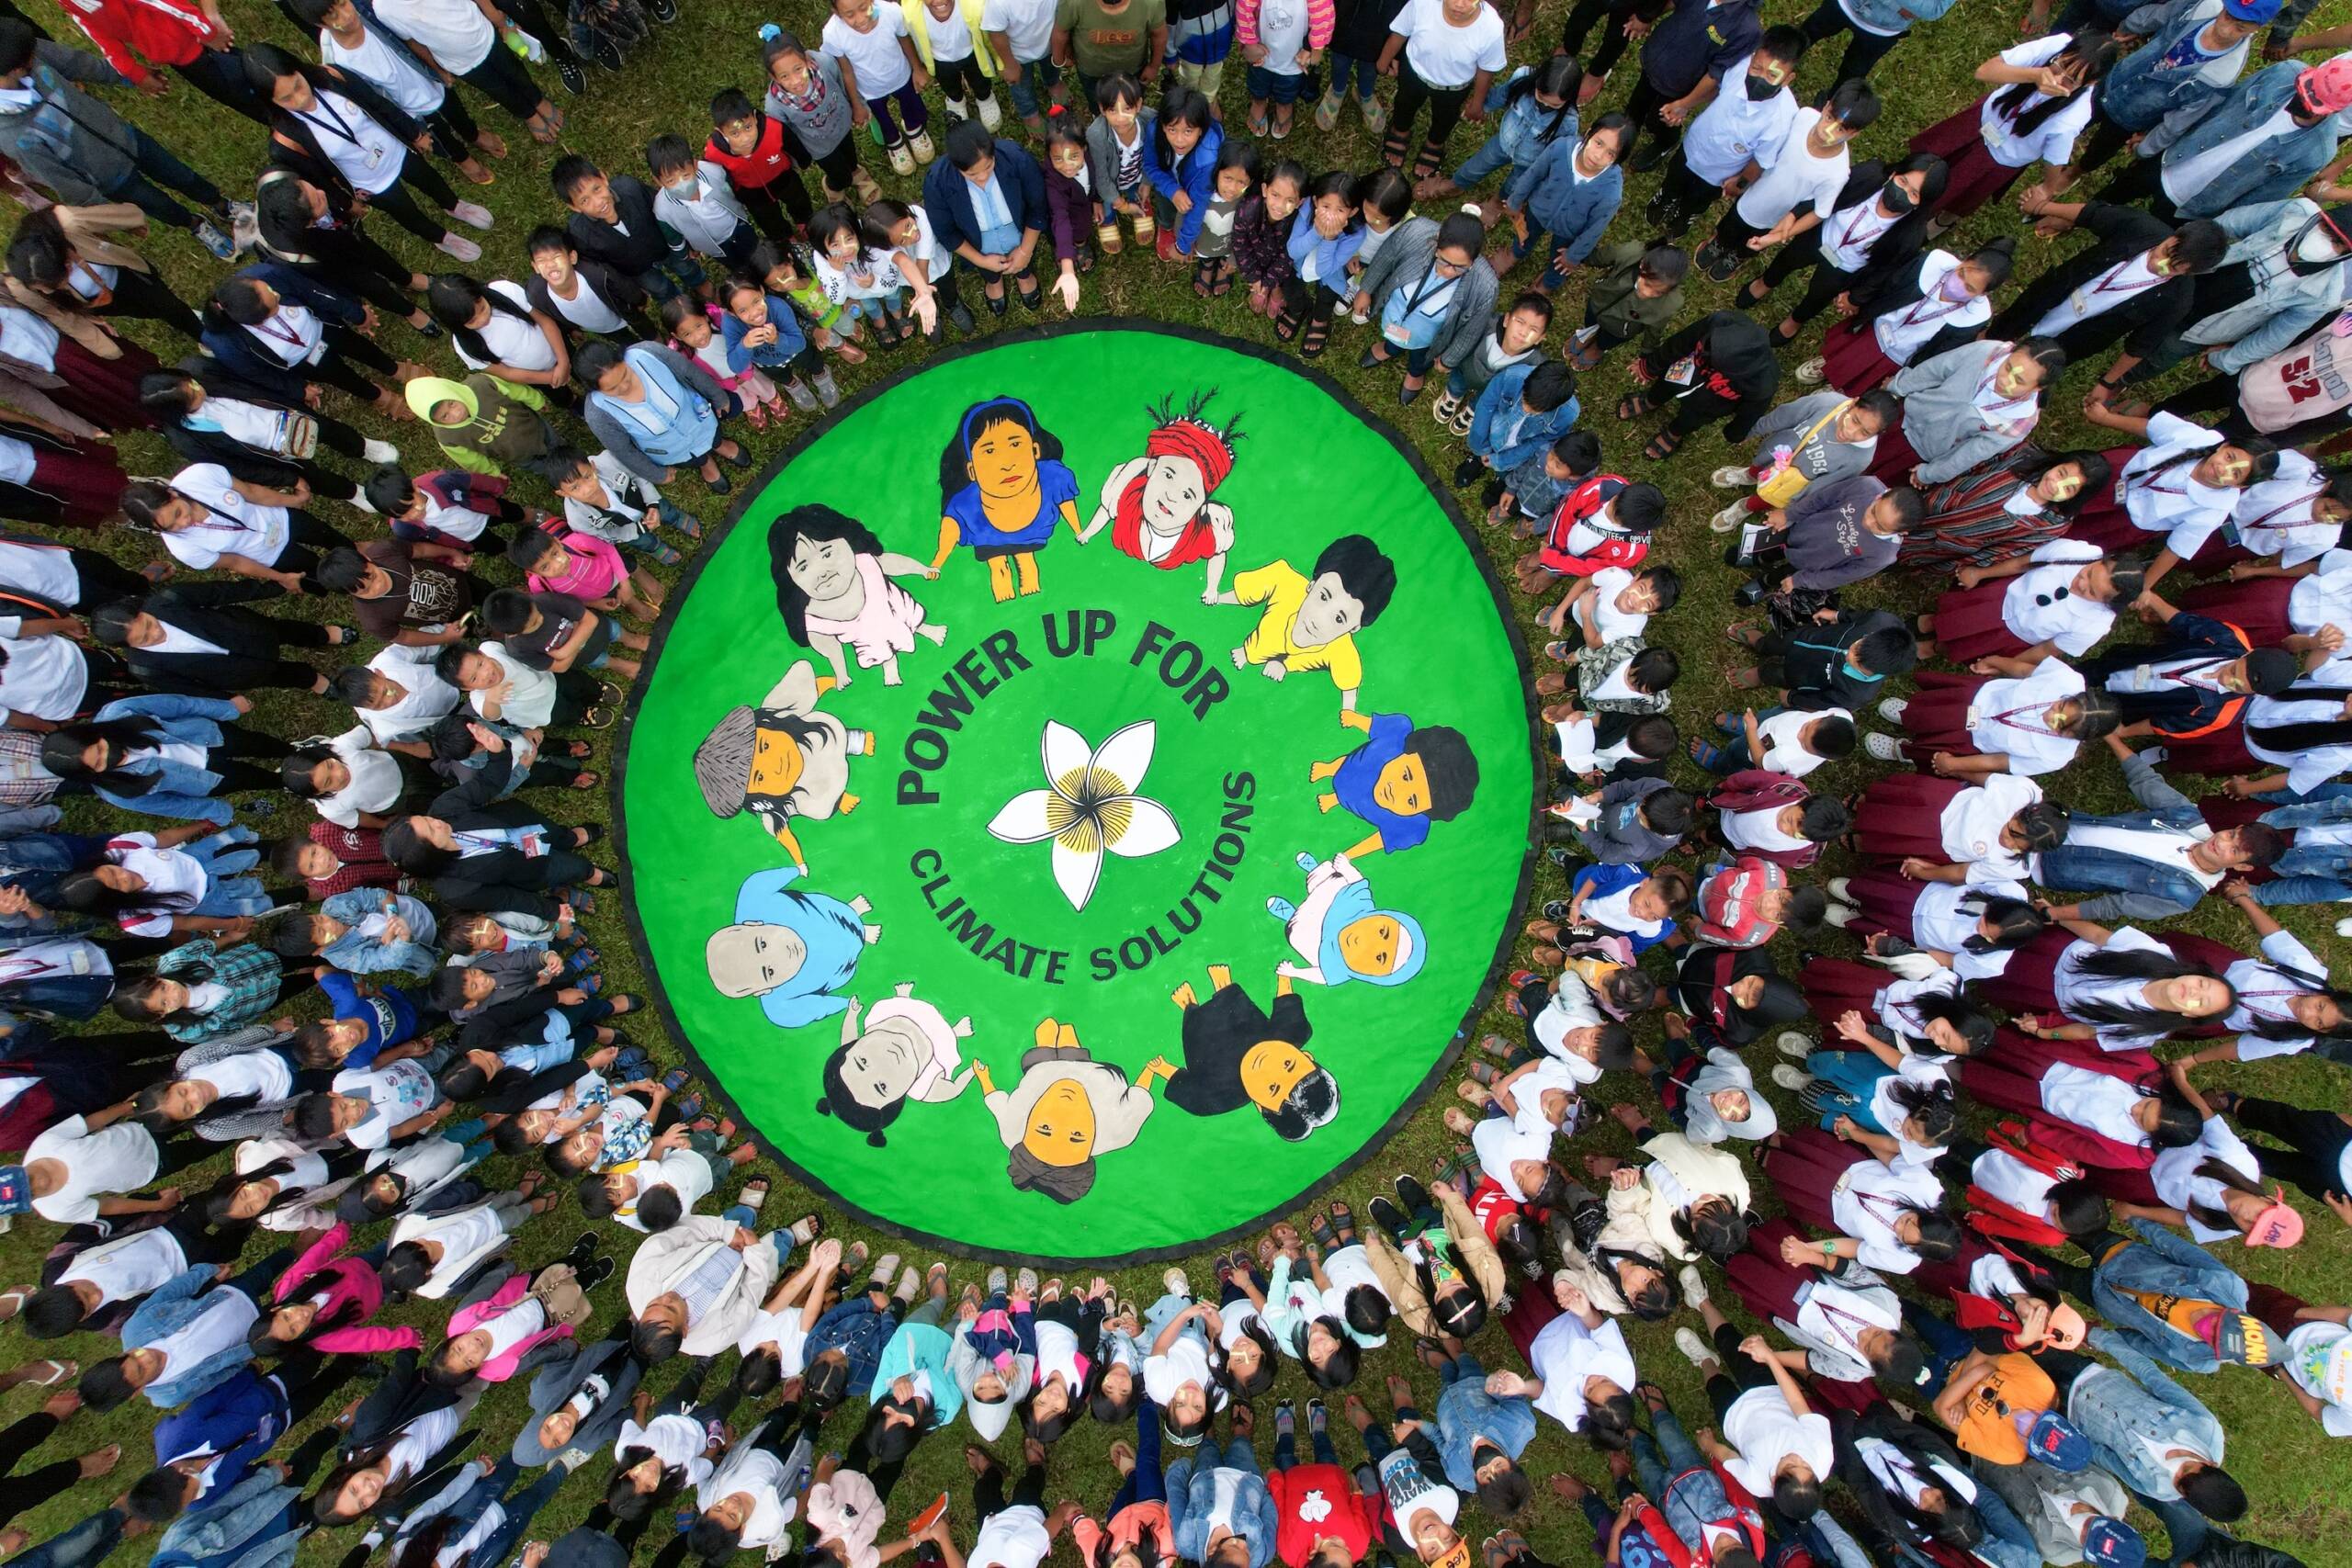 Santiago City, Filipinas, 26 de outubro: 360 estudantes e professores uniram forças para defender soluções de energia renovável lideradas pelas comunidades. Foto: Kathleen Lei Limayo, Genesis Epistola